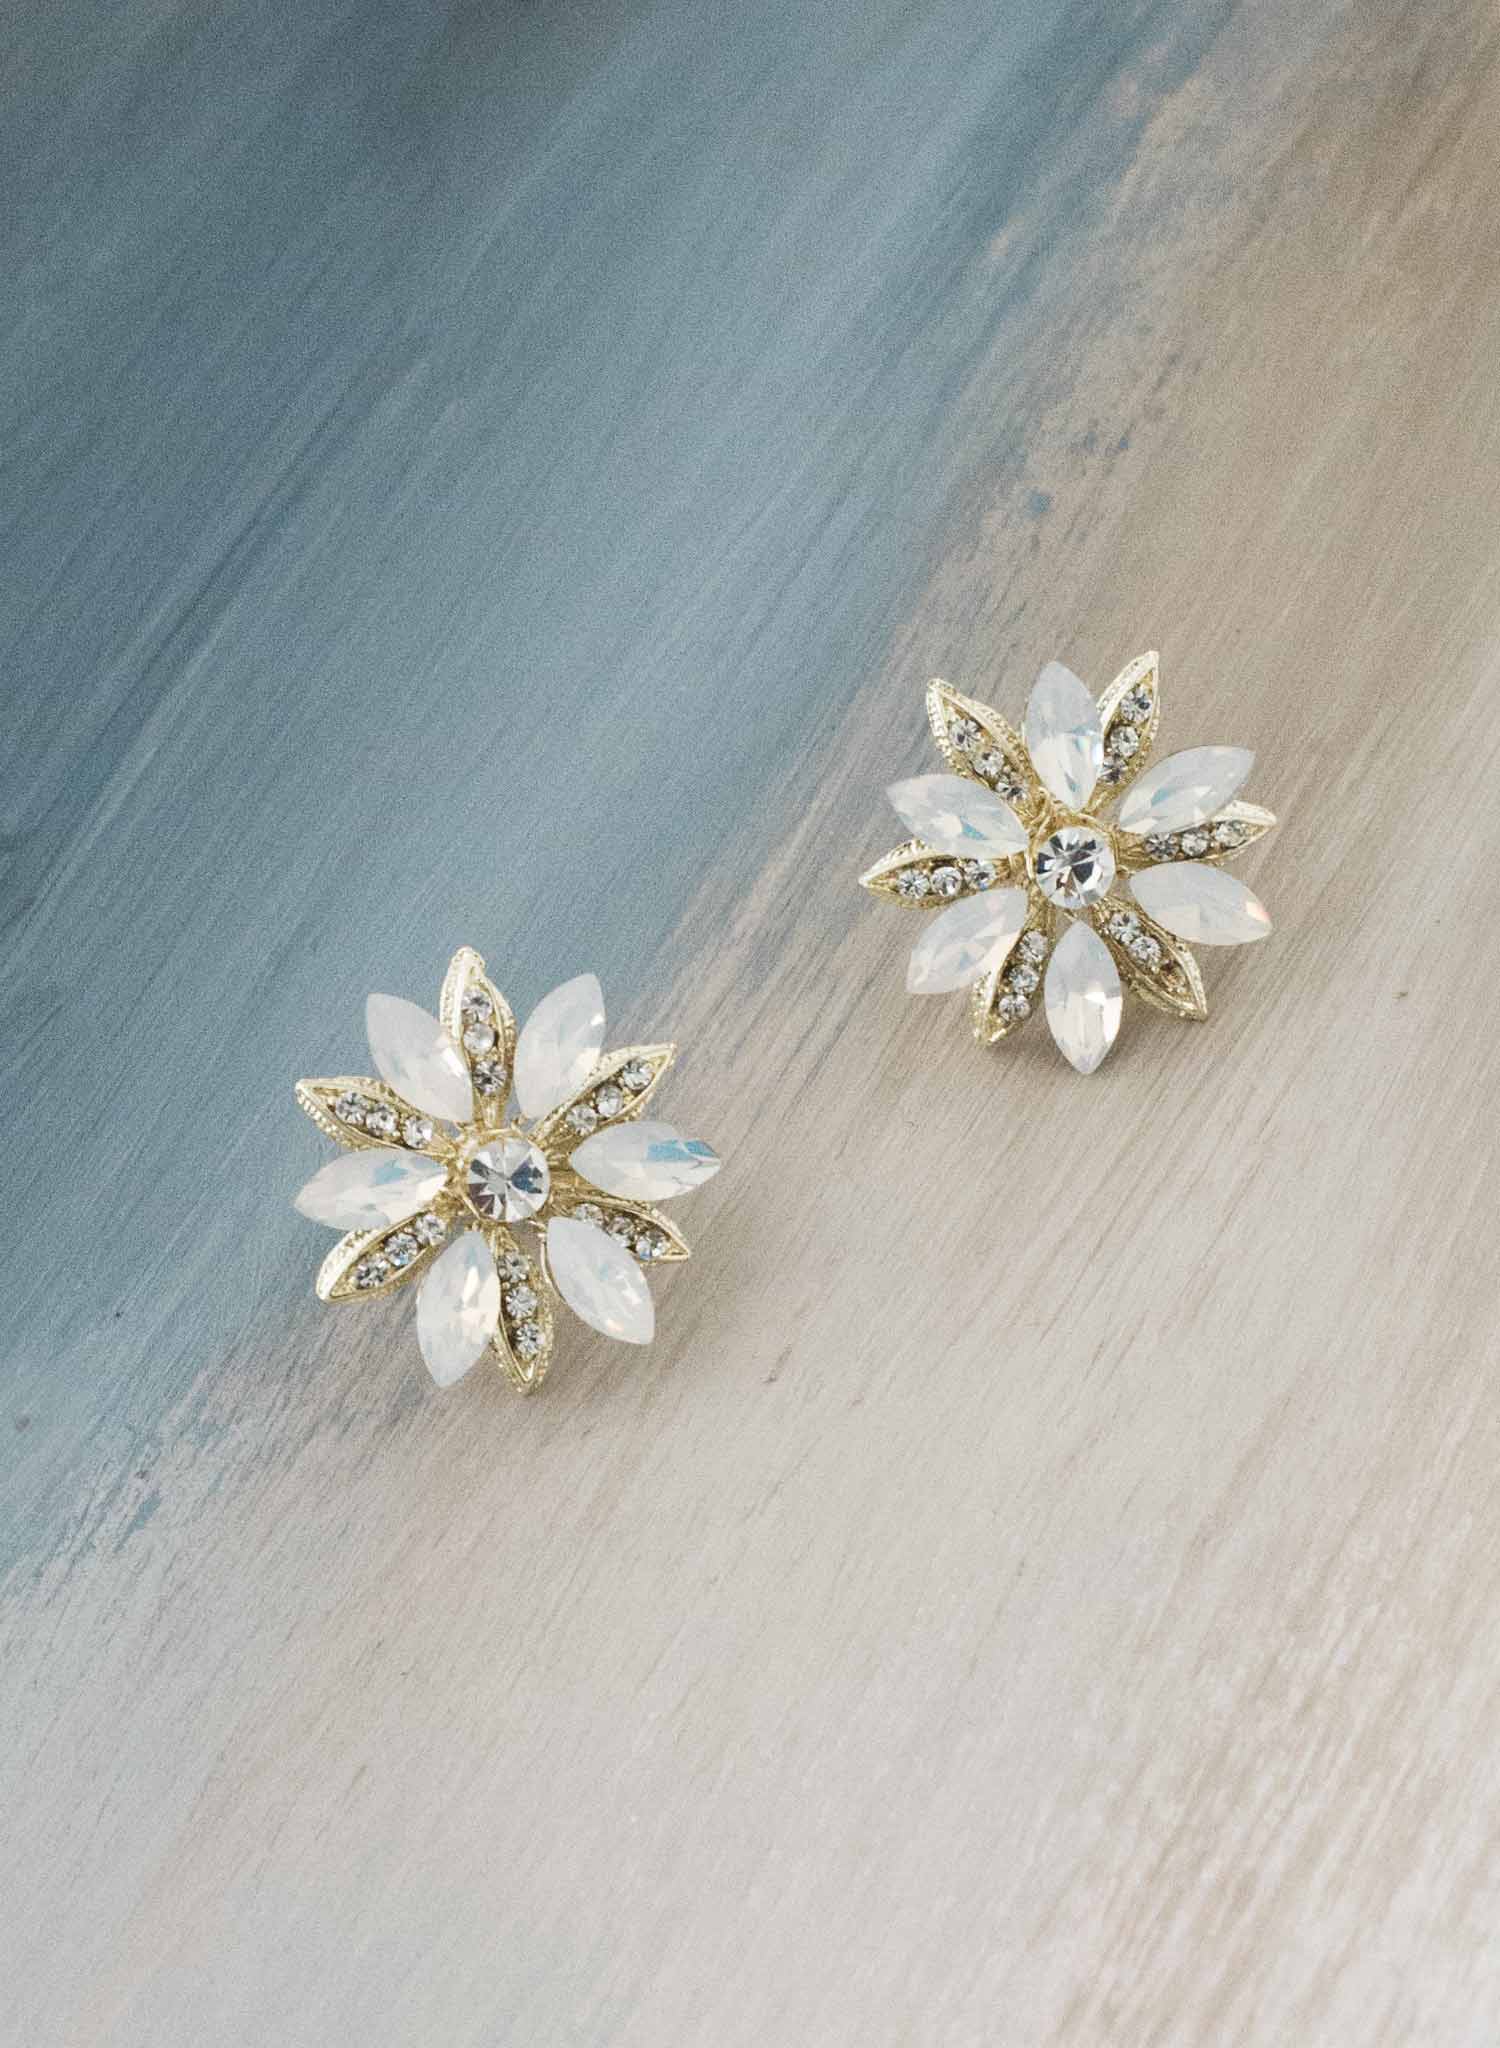 Regal opal starburst earrings - Style #9032